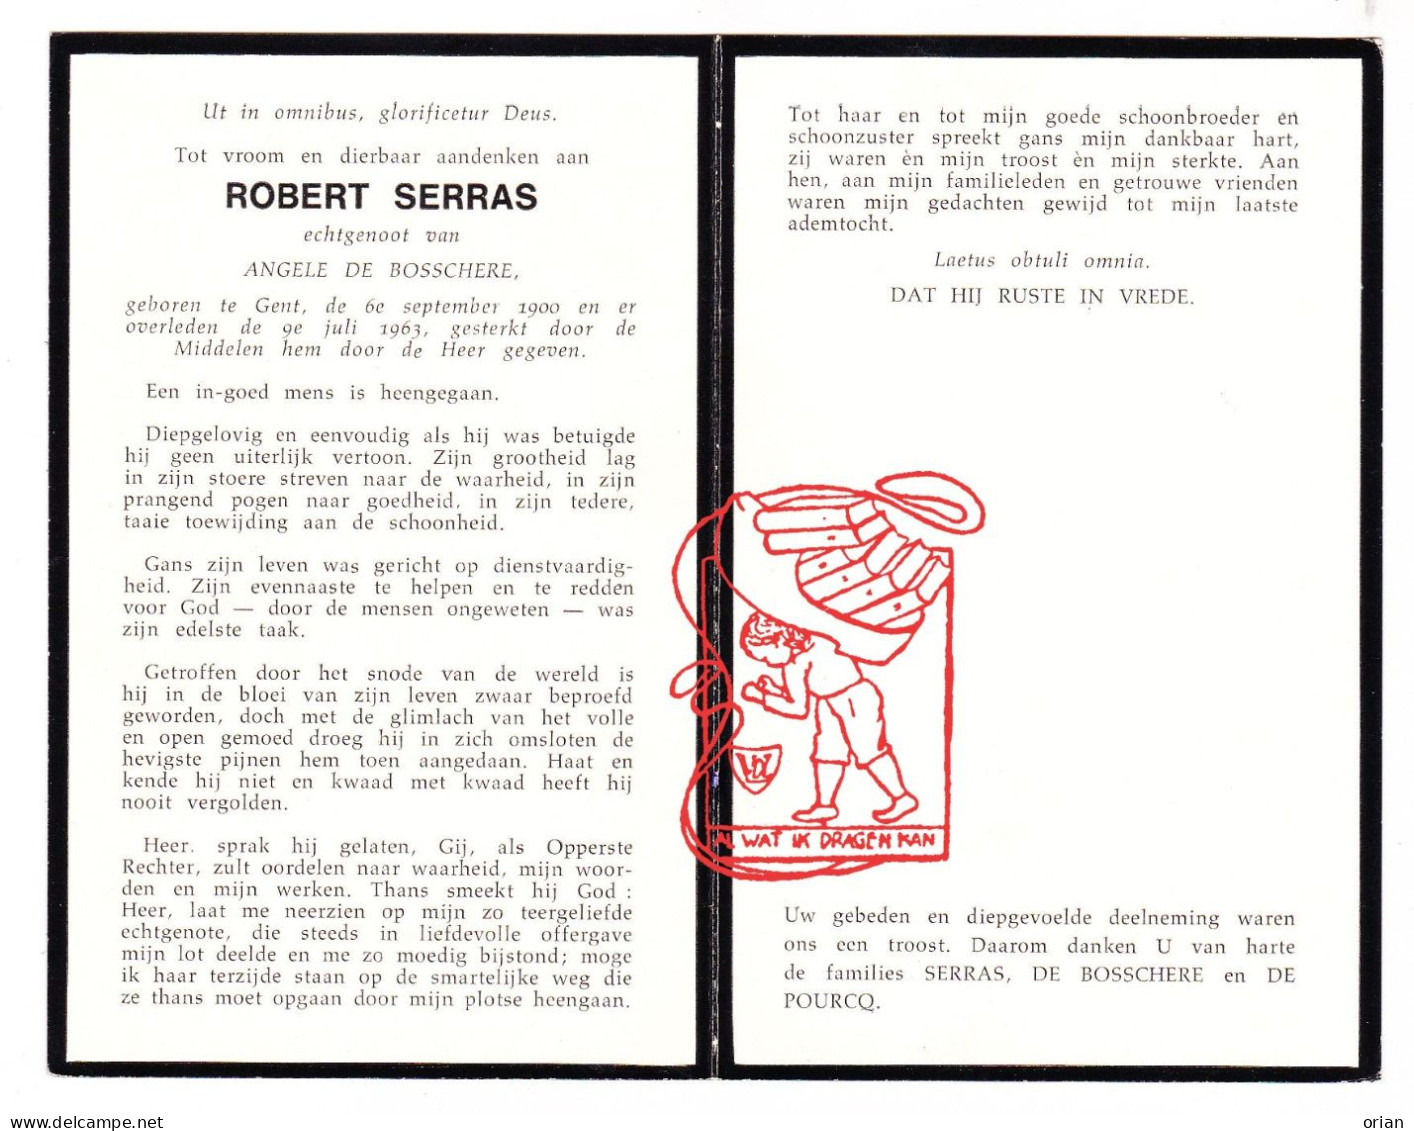 DP Robert Serras ° Gent 1900 † 1963 X Angèle De Bosschere // De Pourcq - Images Religieuses